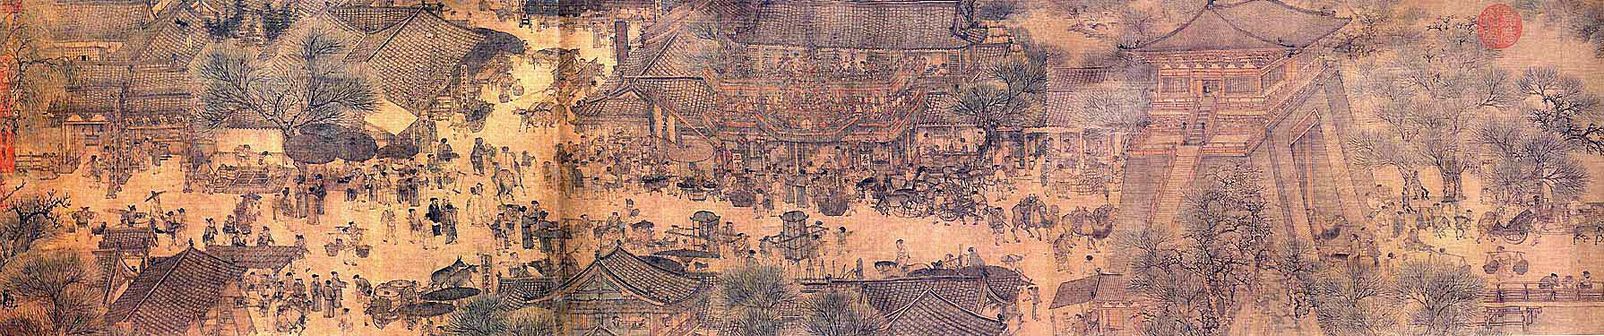 Po nga piktura Përgjatë Lumit Gjatë Festivalit Qingming e Zhang Zeduan-it: një skenë më e gjerë e ndërtesave urbane me një portik të madh në të djathtë.